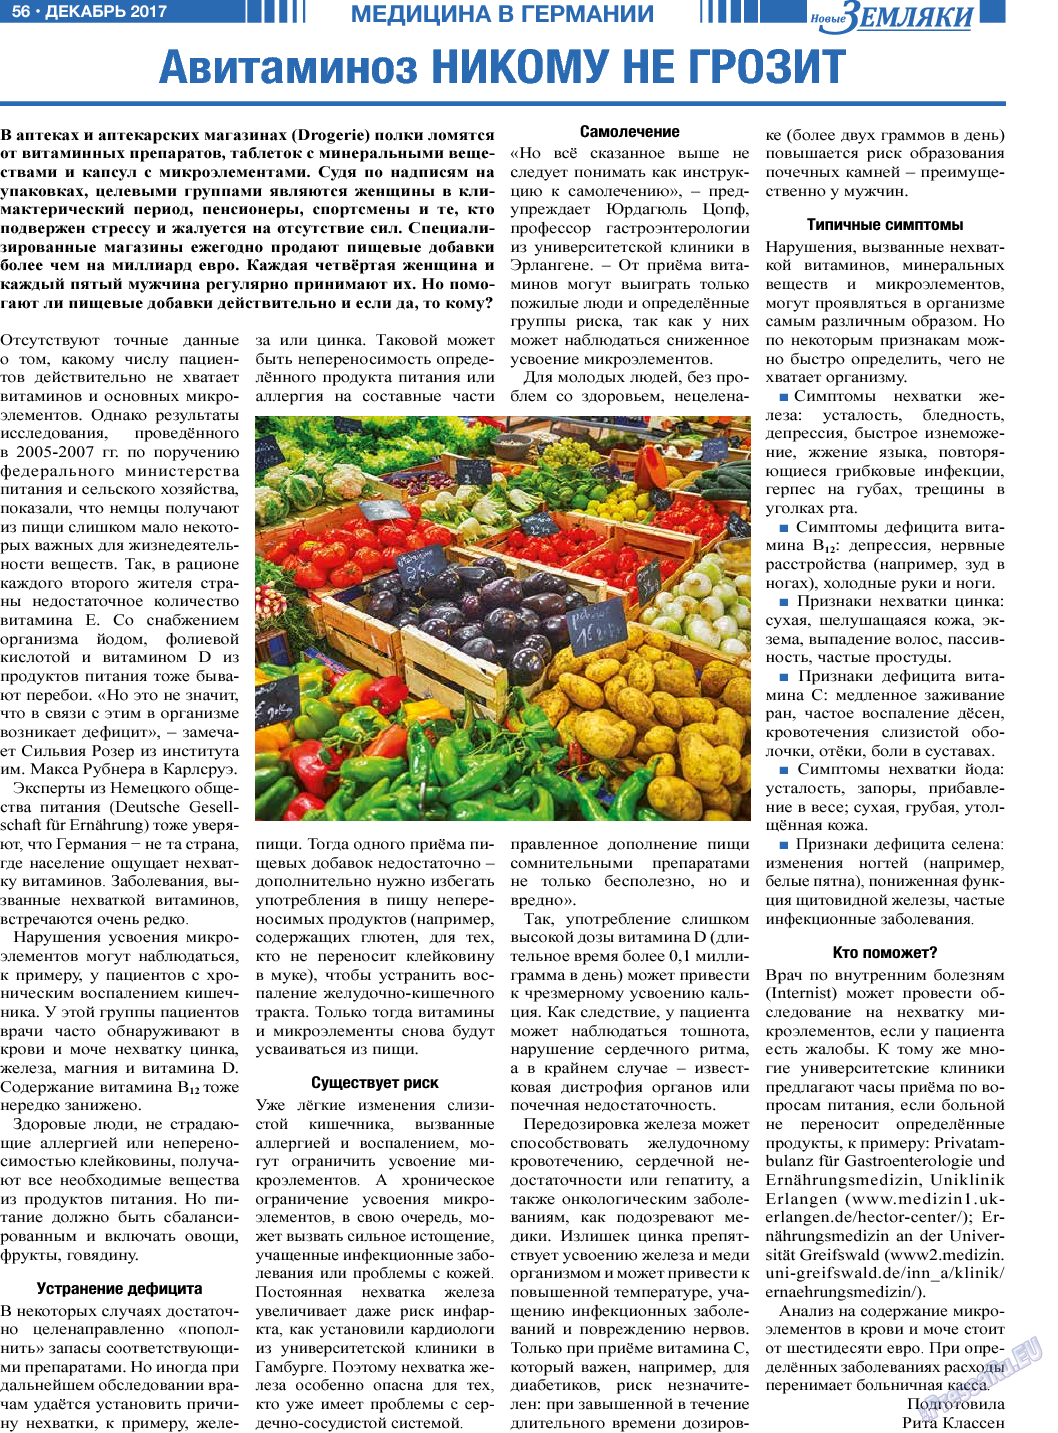 Новые Земляки, газета. 2017 №12 стр.56